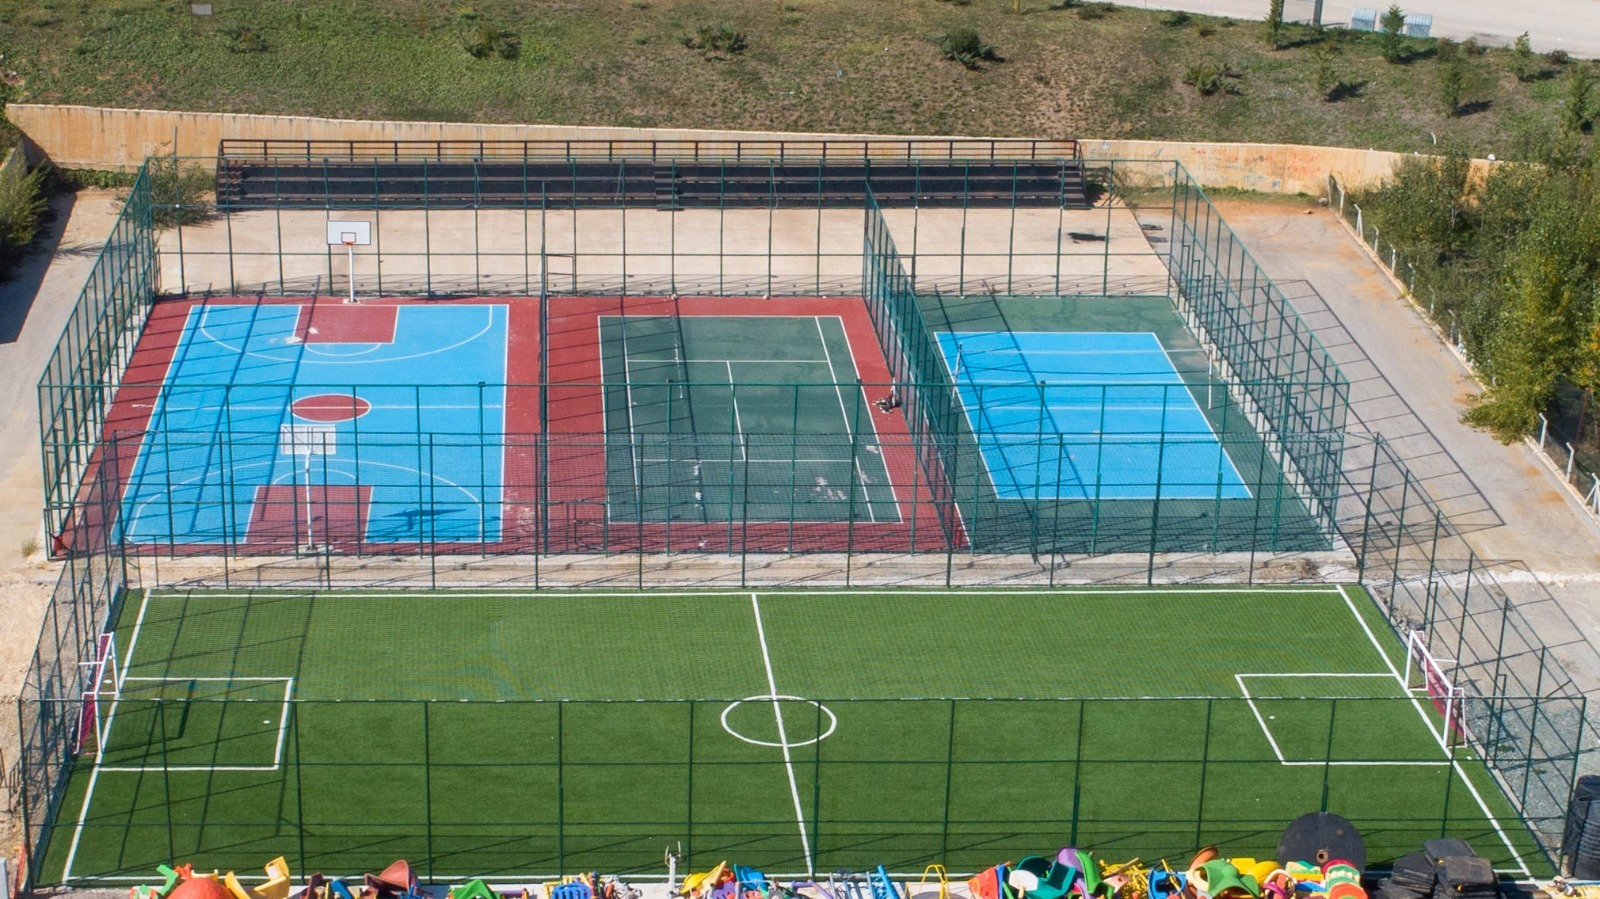 Herkes dilediğince spor yapabilsin diye Kastamonu Belediyesi spor alanlarının sayısını arttırıyor